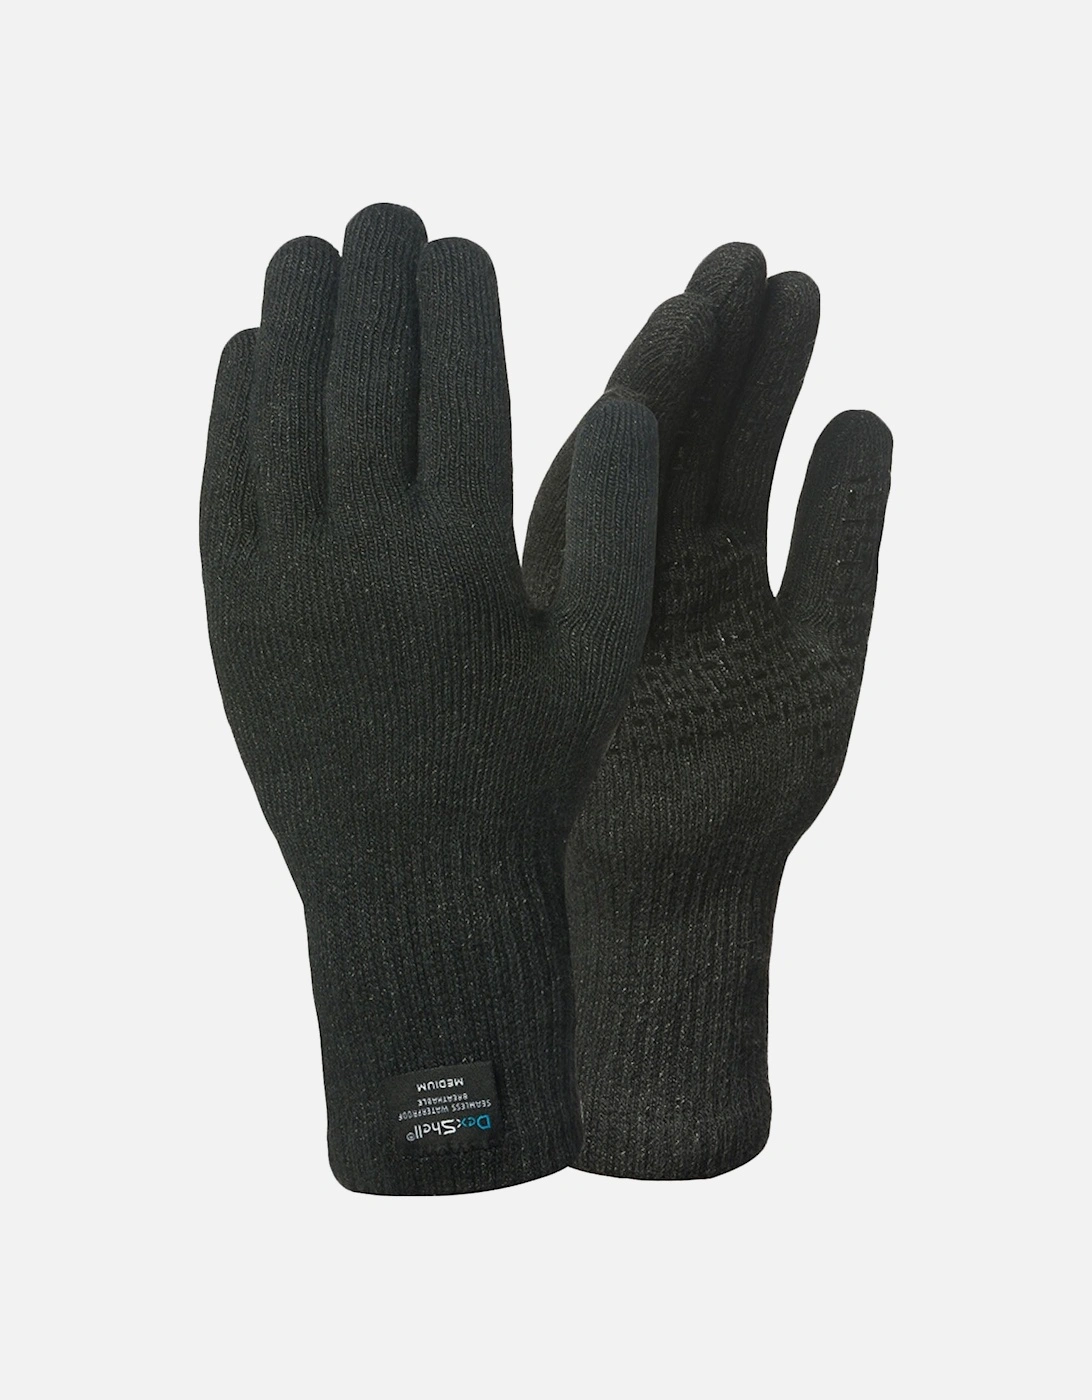 ToughShield Mens Waterproof Cut Resistant Gloves - Black, 2 of 1